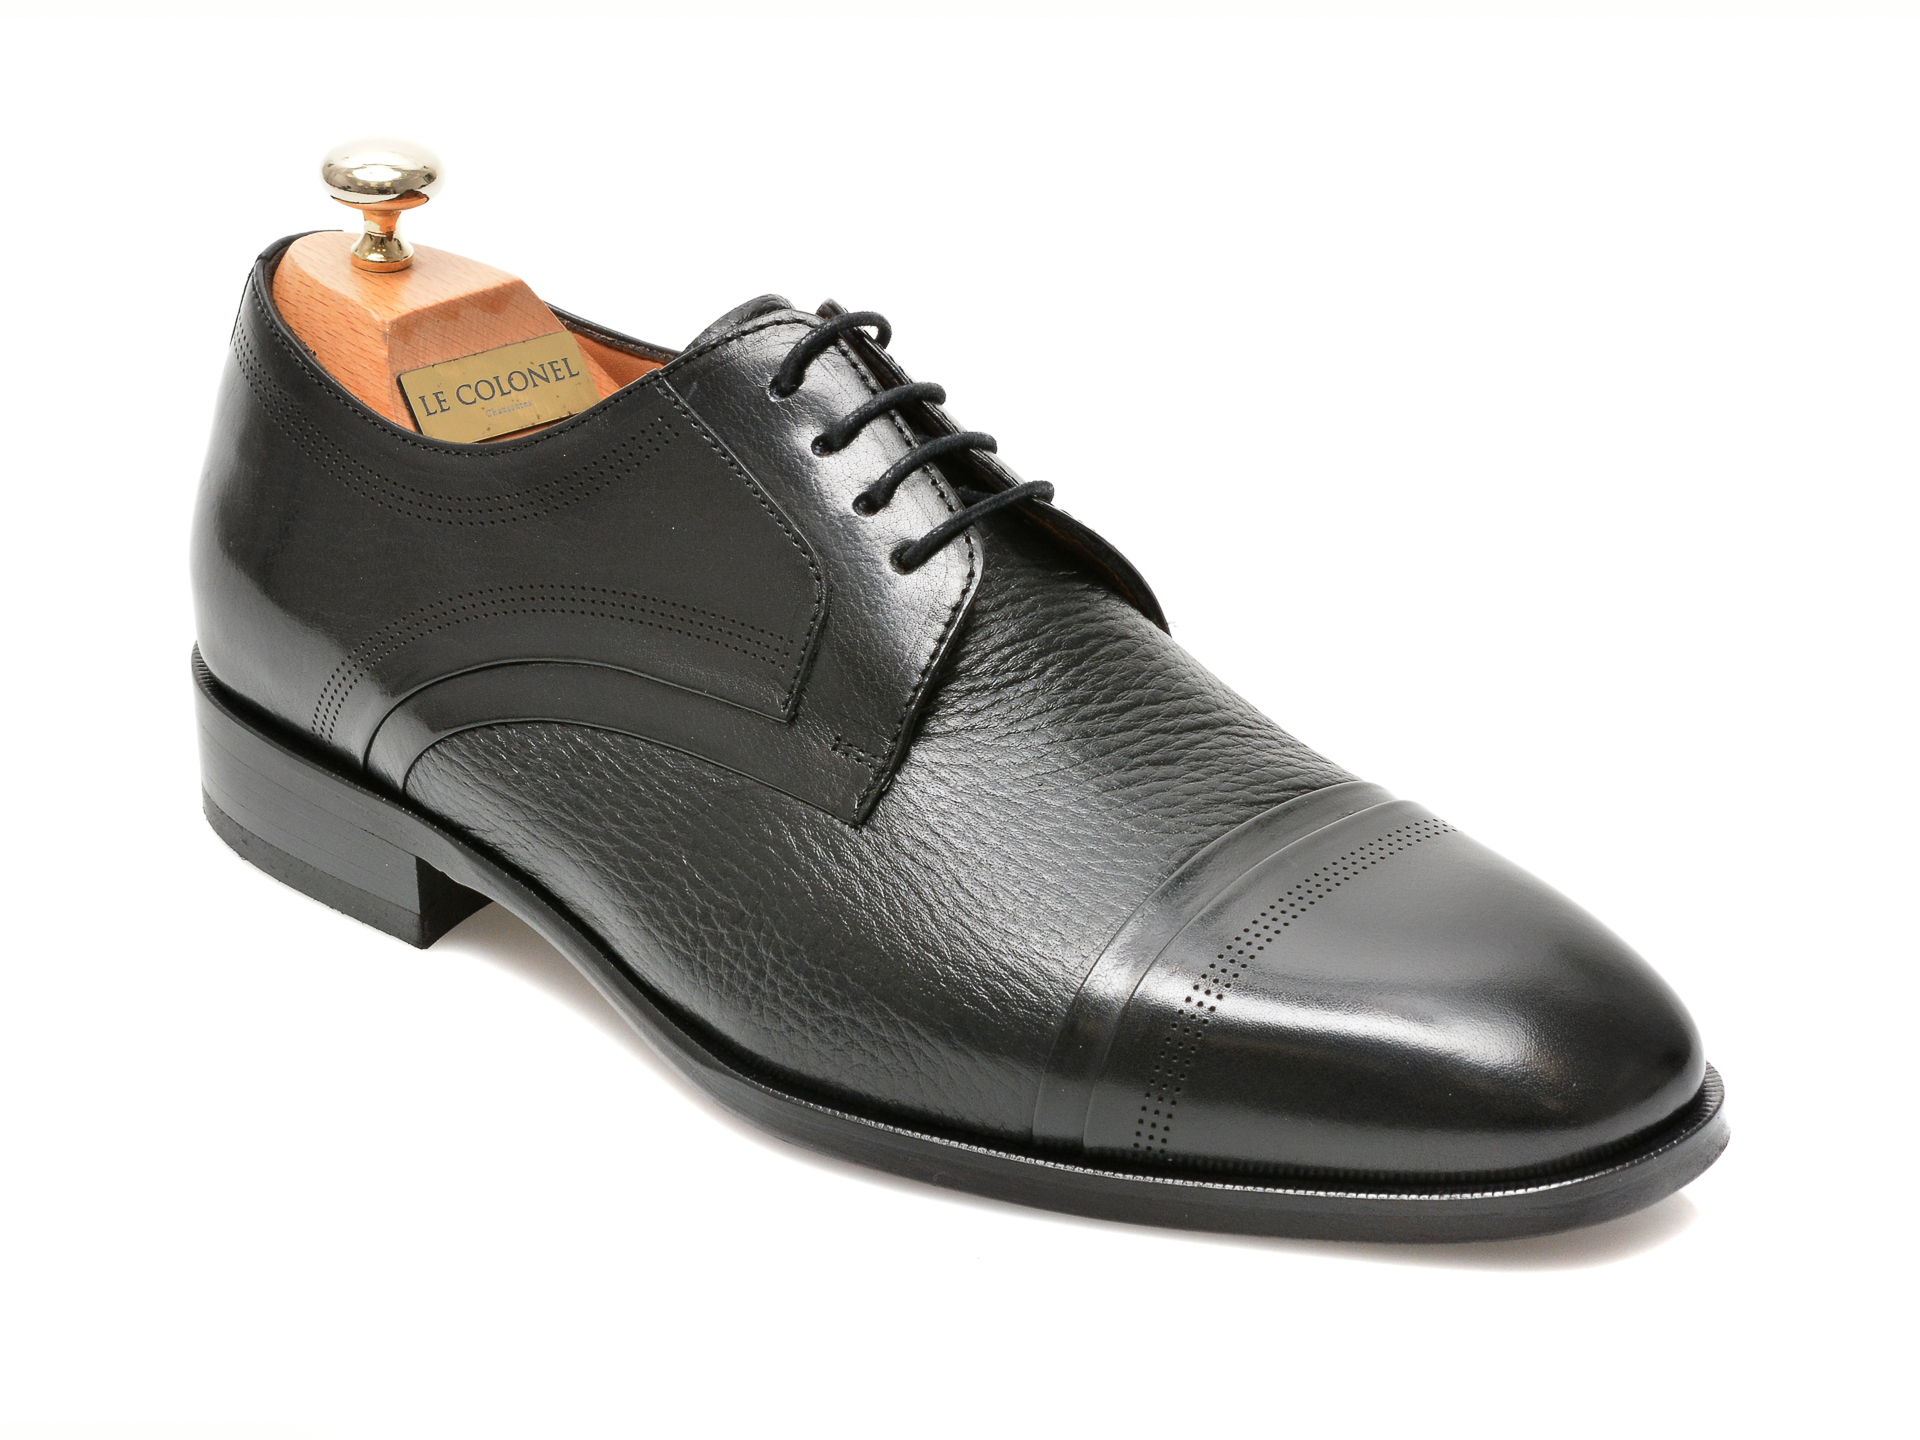 Pantofi LE COLONEL negri, 48470, din piele naturala Le Colonel Le Colonel